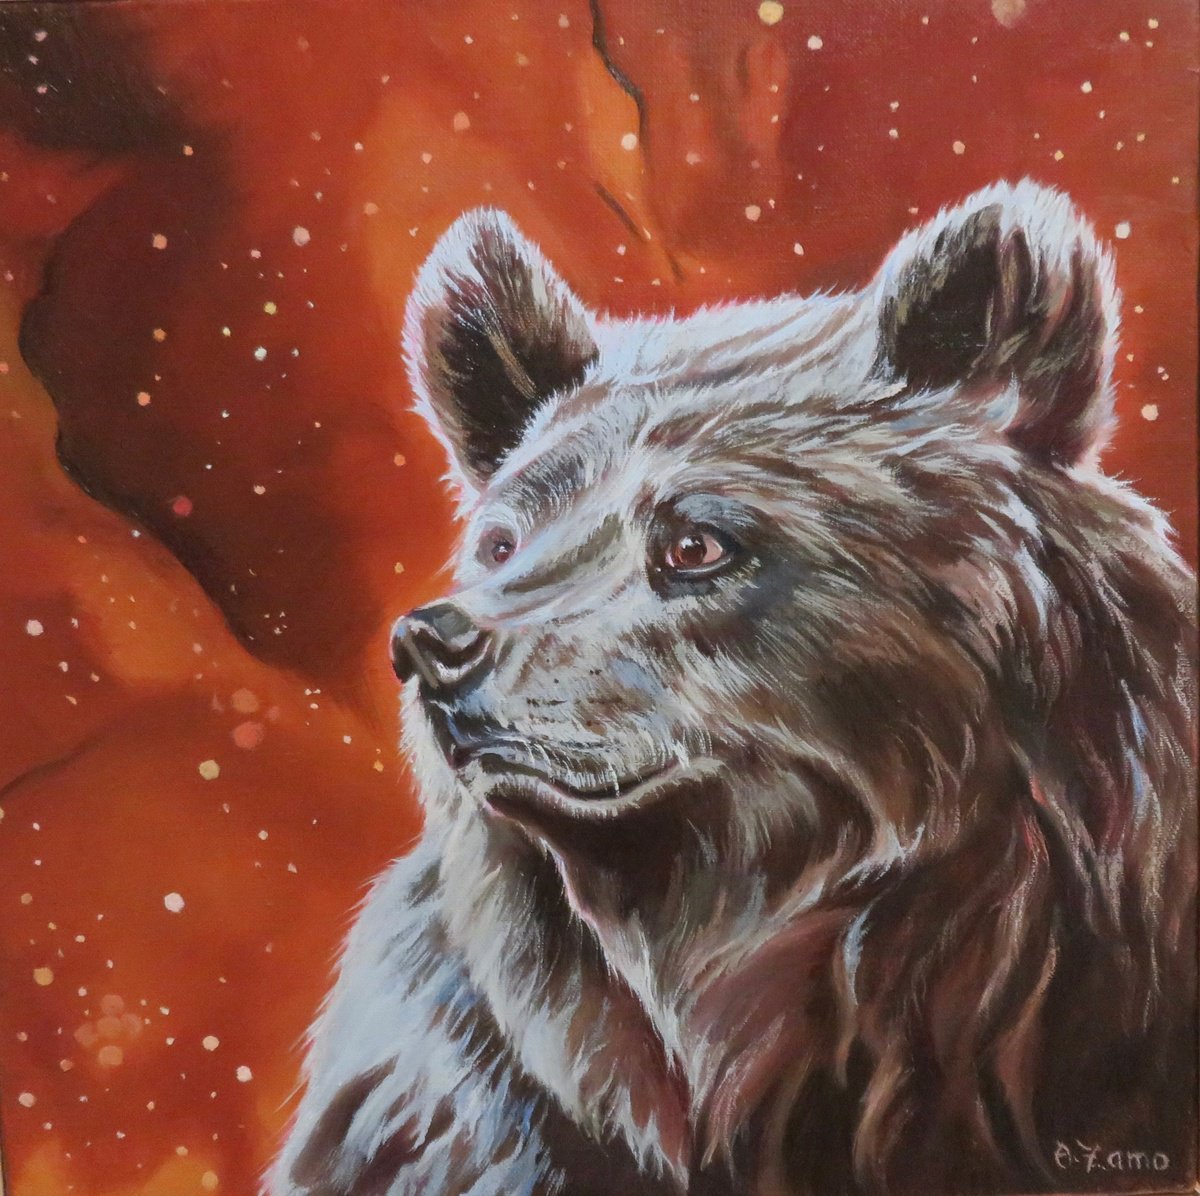 The little bear by Anne Zamo